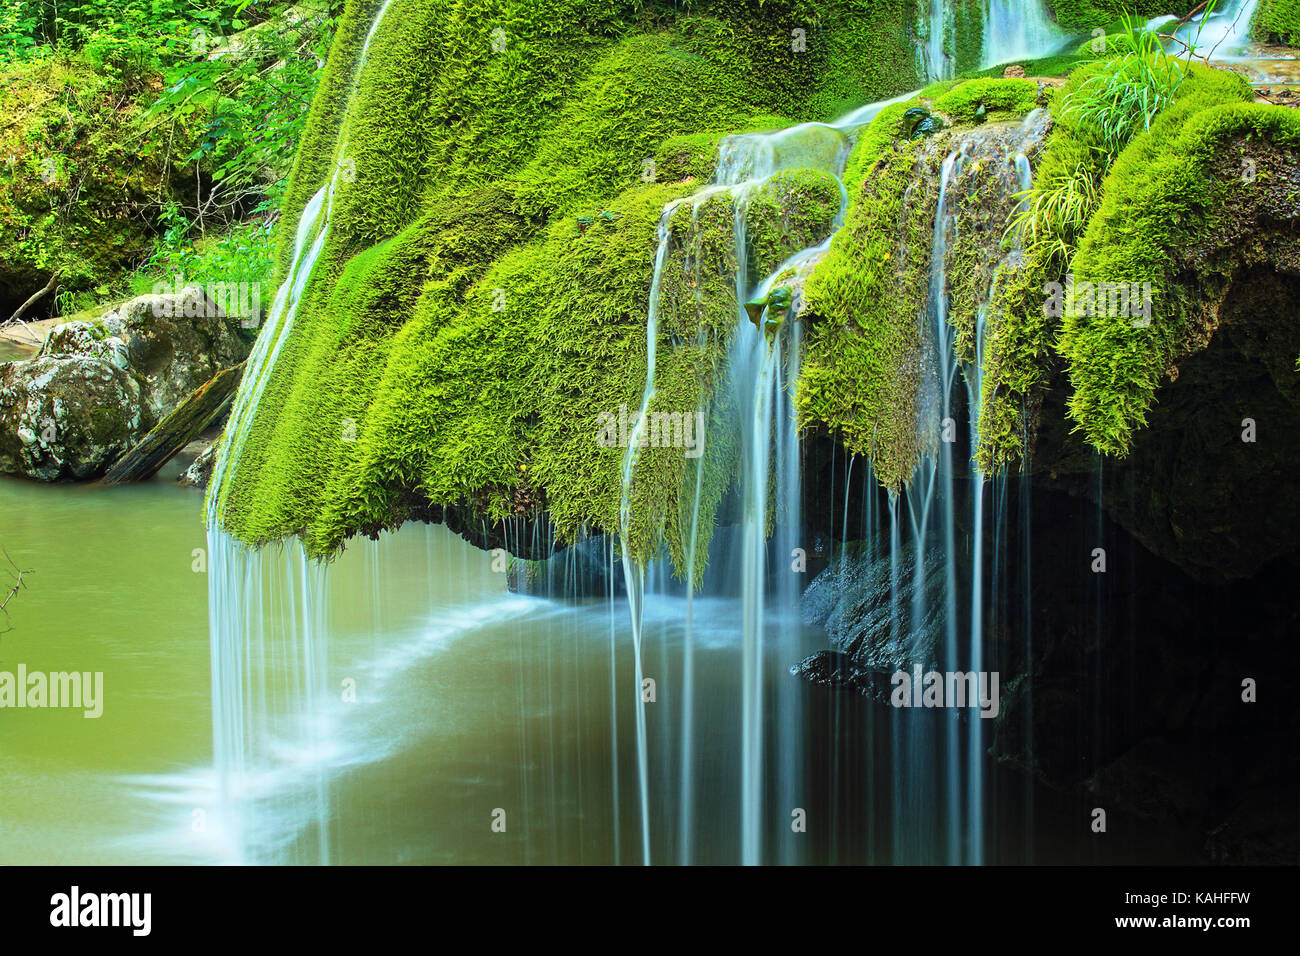 Détail de belle cascade pleine de mousse verte, la cascade de Brasov, bigar Roumanie Banque D'Images